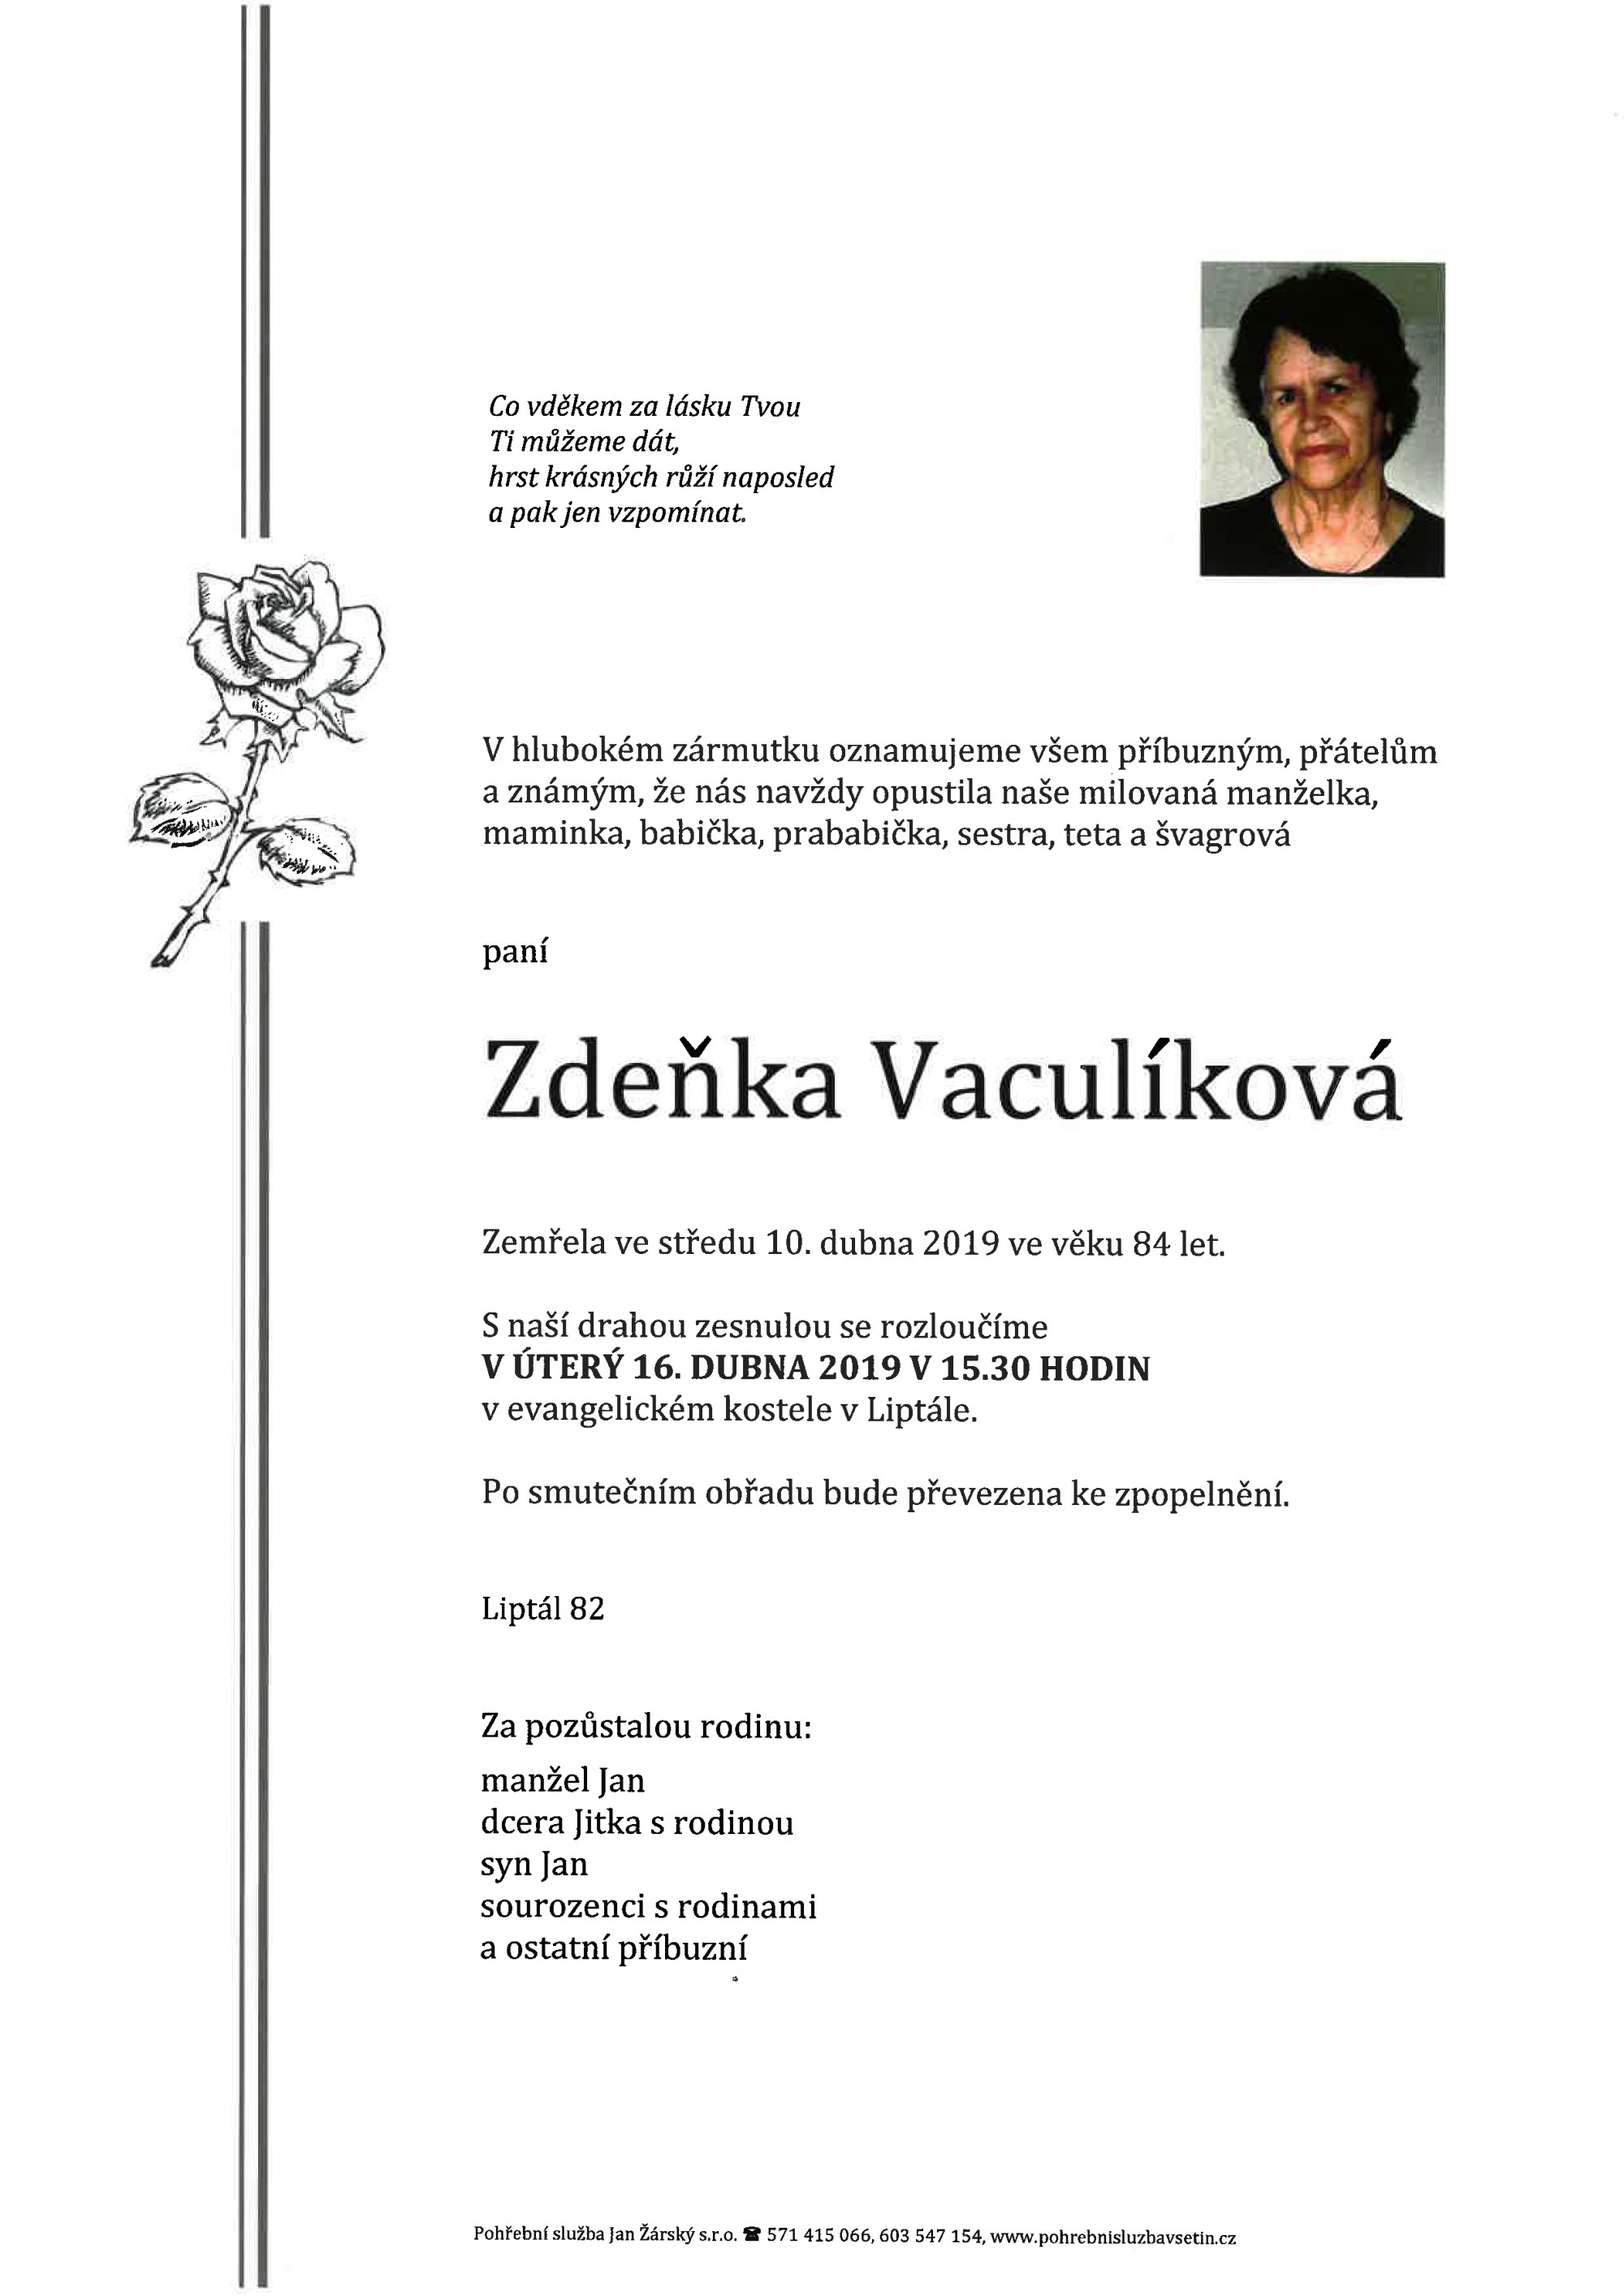 Zdeňka Vaculíková